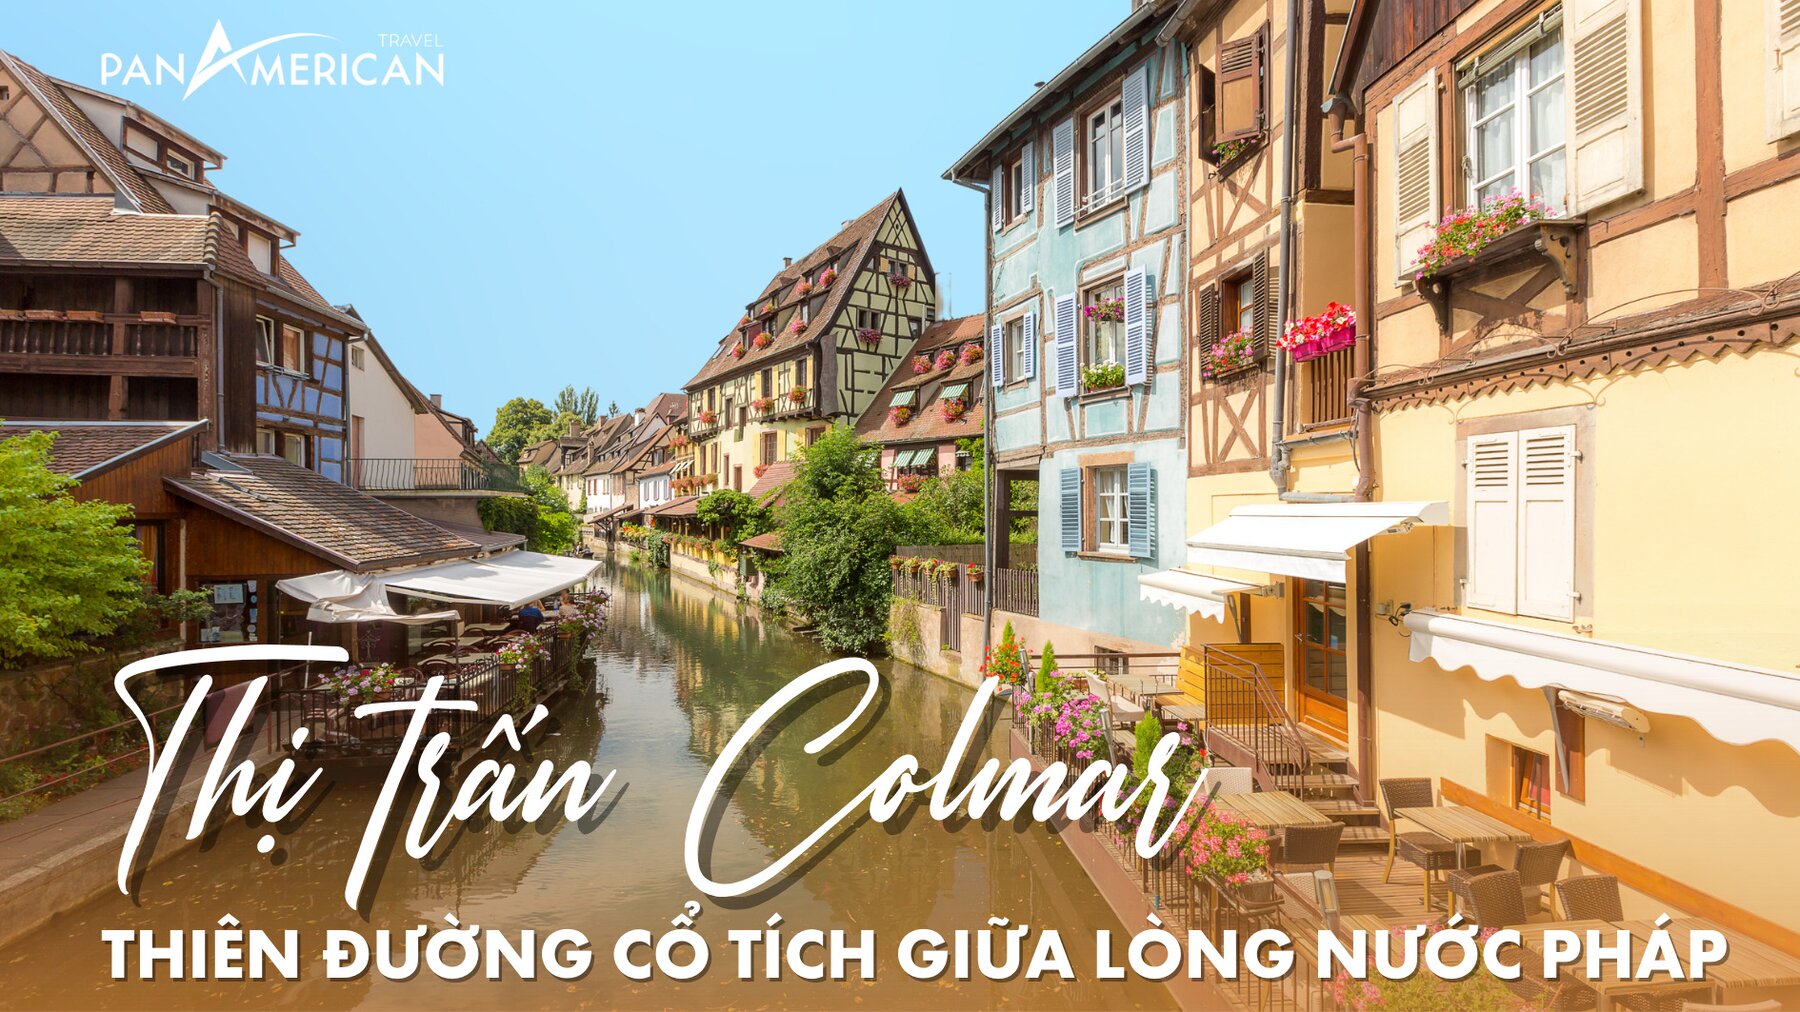 Thị trấn Colmar - Thiên đường cổ tích giữa lòng nước Pháp